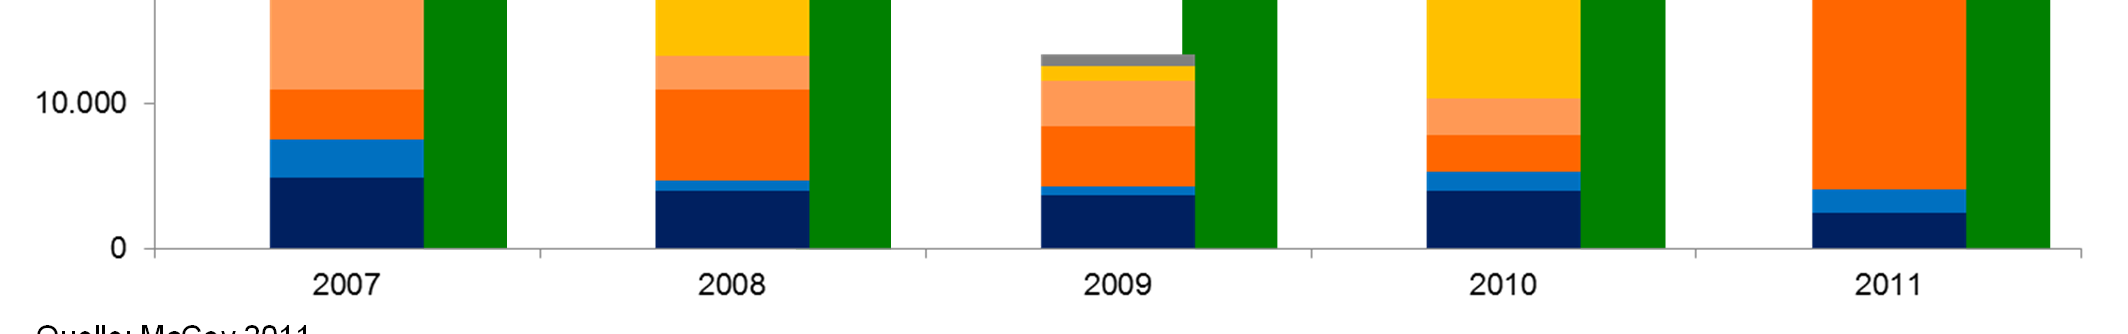 Aufträge für neue Turbinenkapazitäten (>10 MW) Boom in China 2007/2008, starker Anstieg in Südamerika 2011 Beauftragte Kapazität in MW Wasserkraft- Boom in China 45.